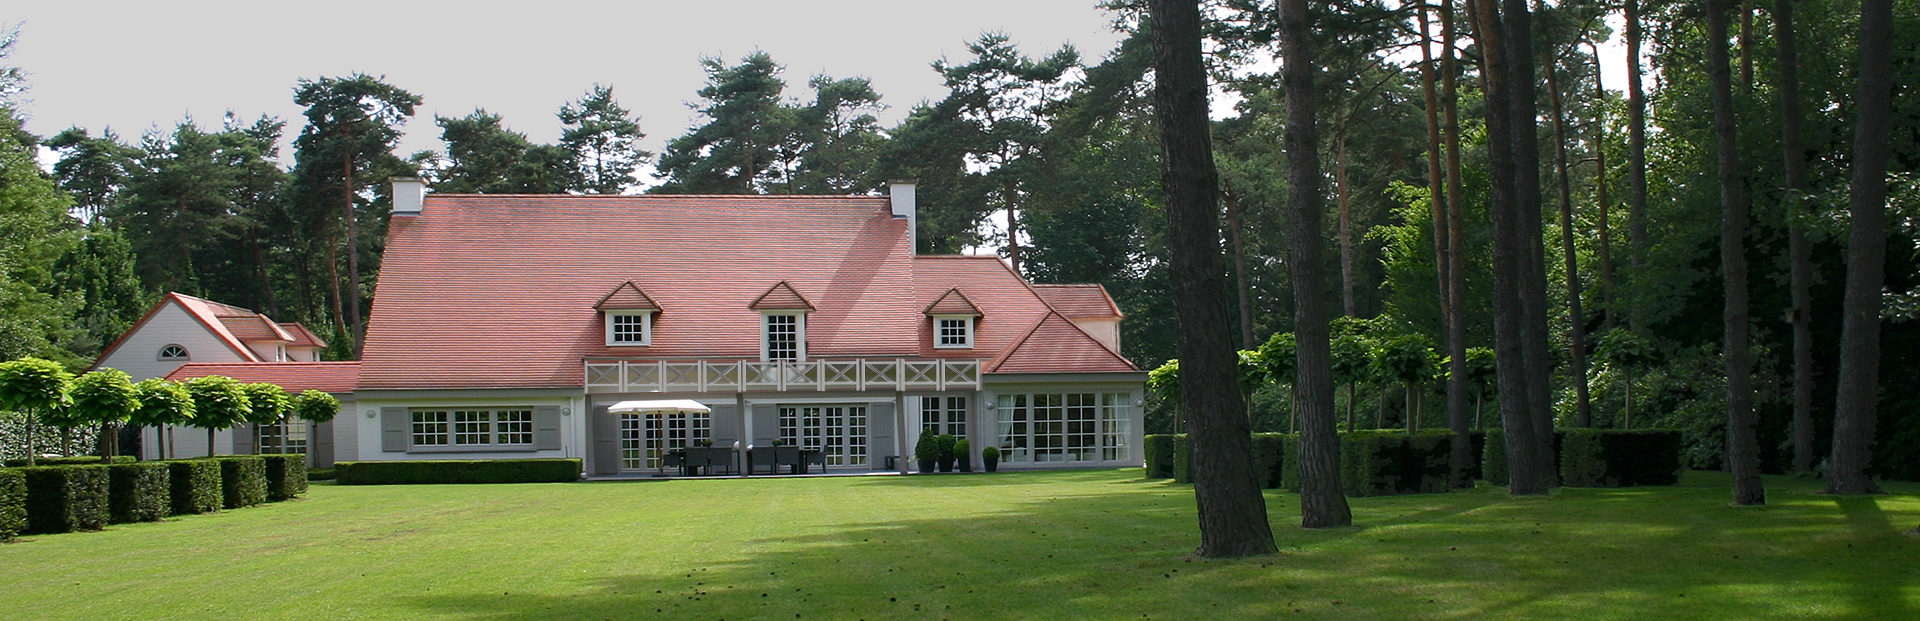 Anvers villa de style cottage rural